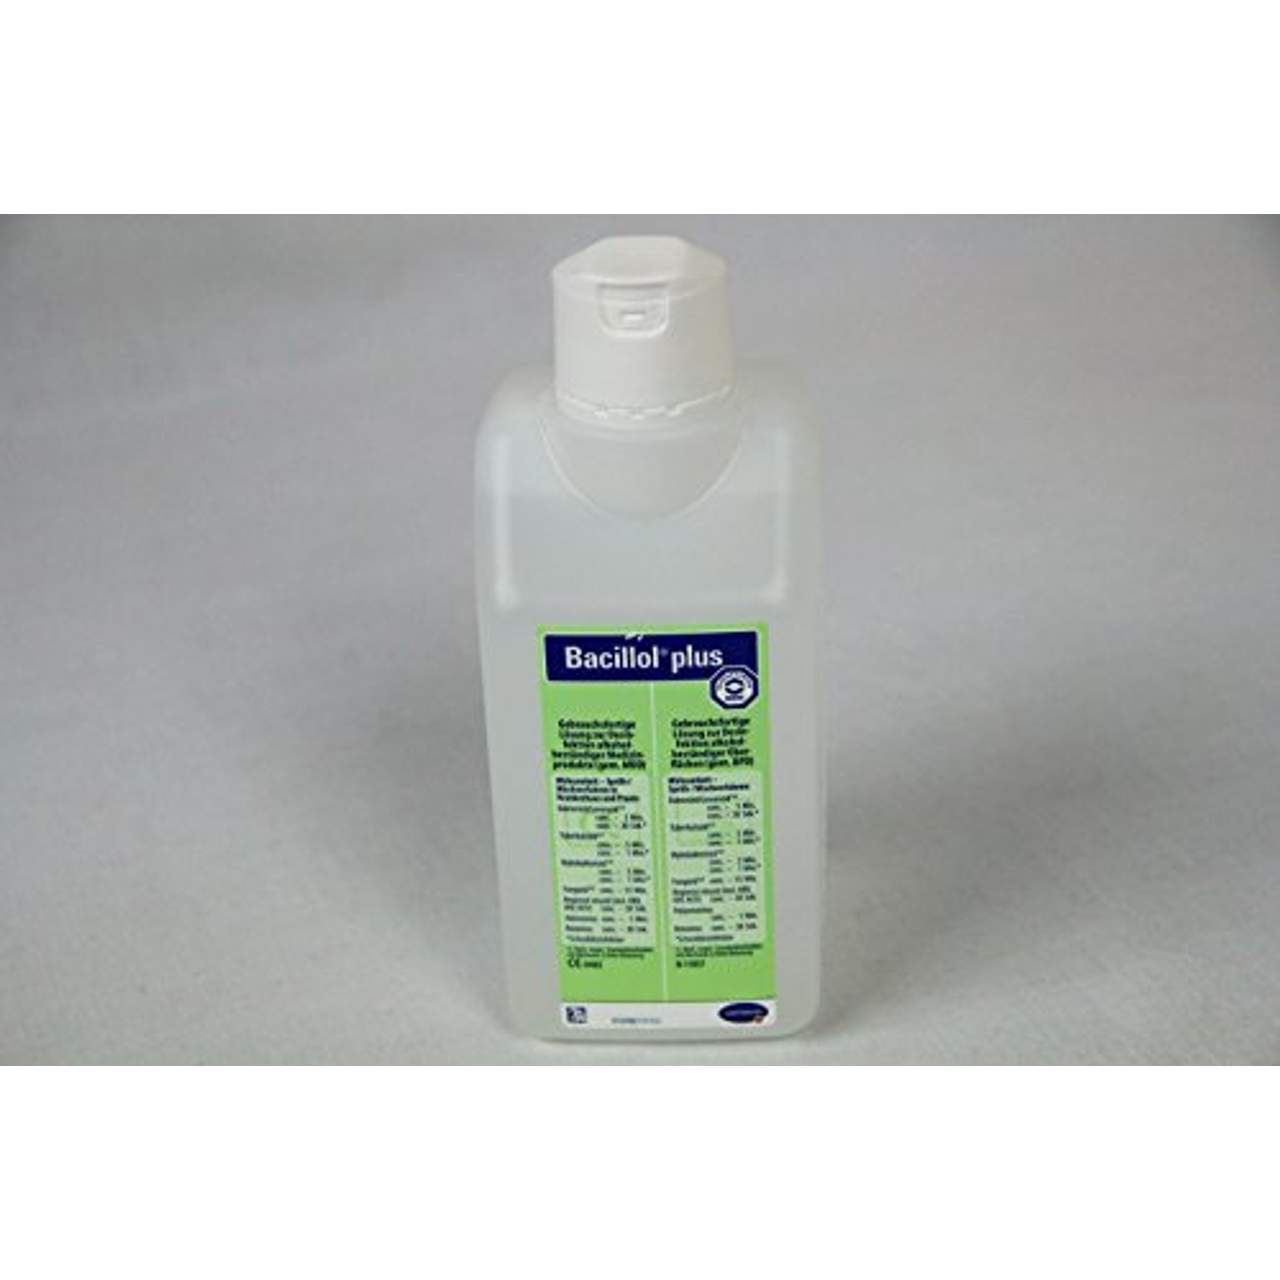 Flächen-Desinfektionsmittel Bacillol plus 500 ml